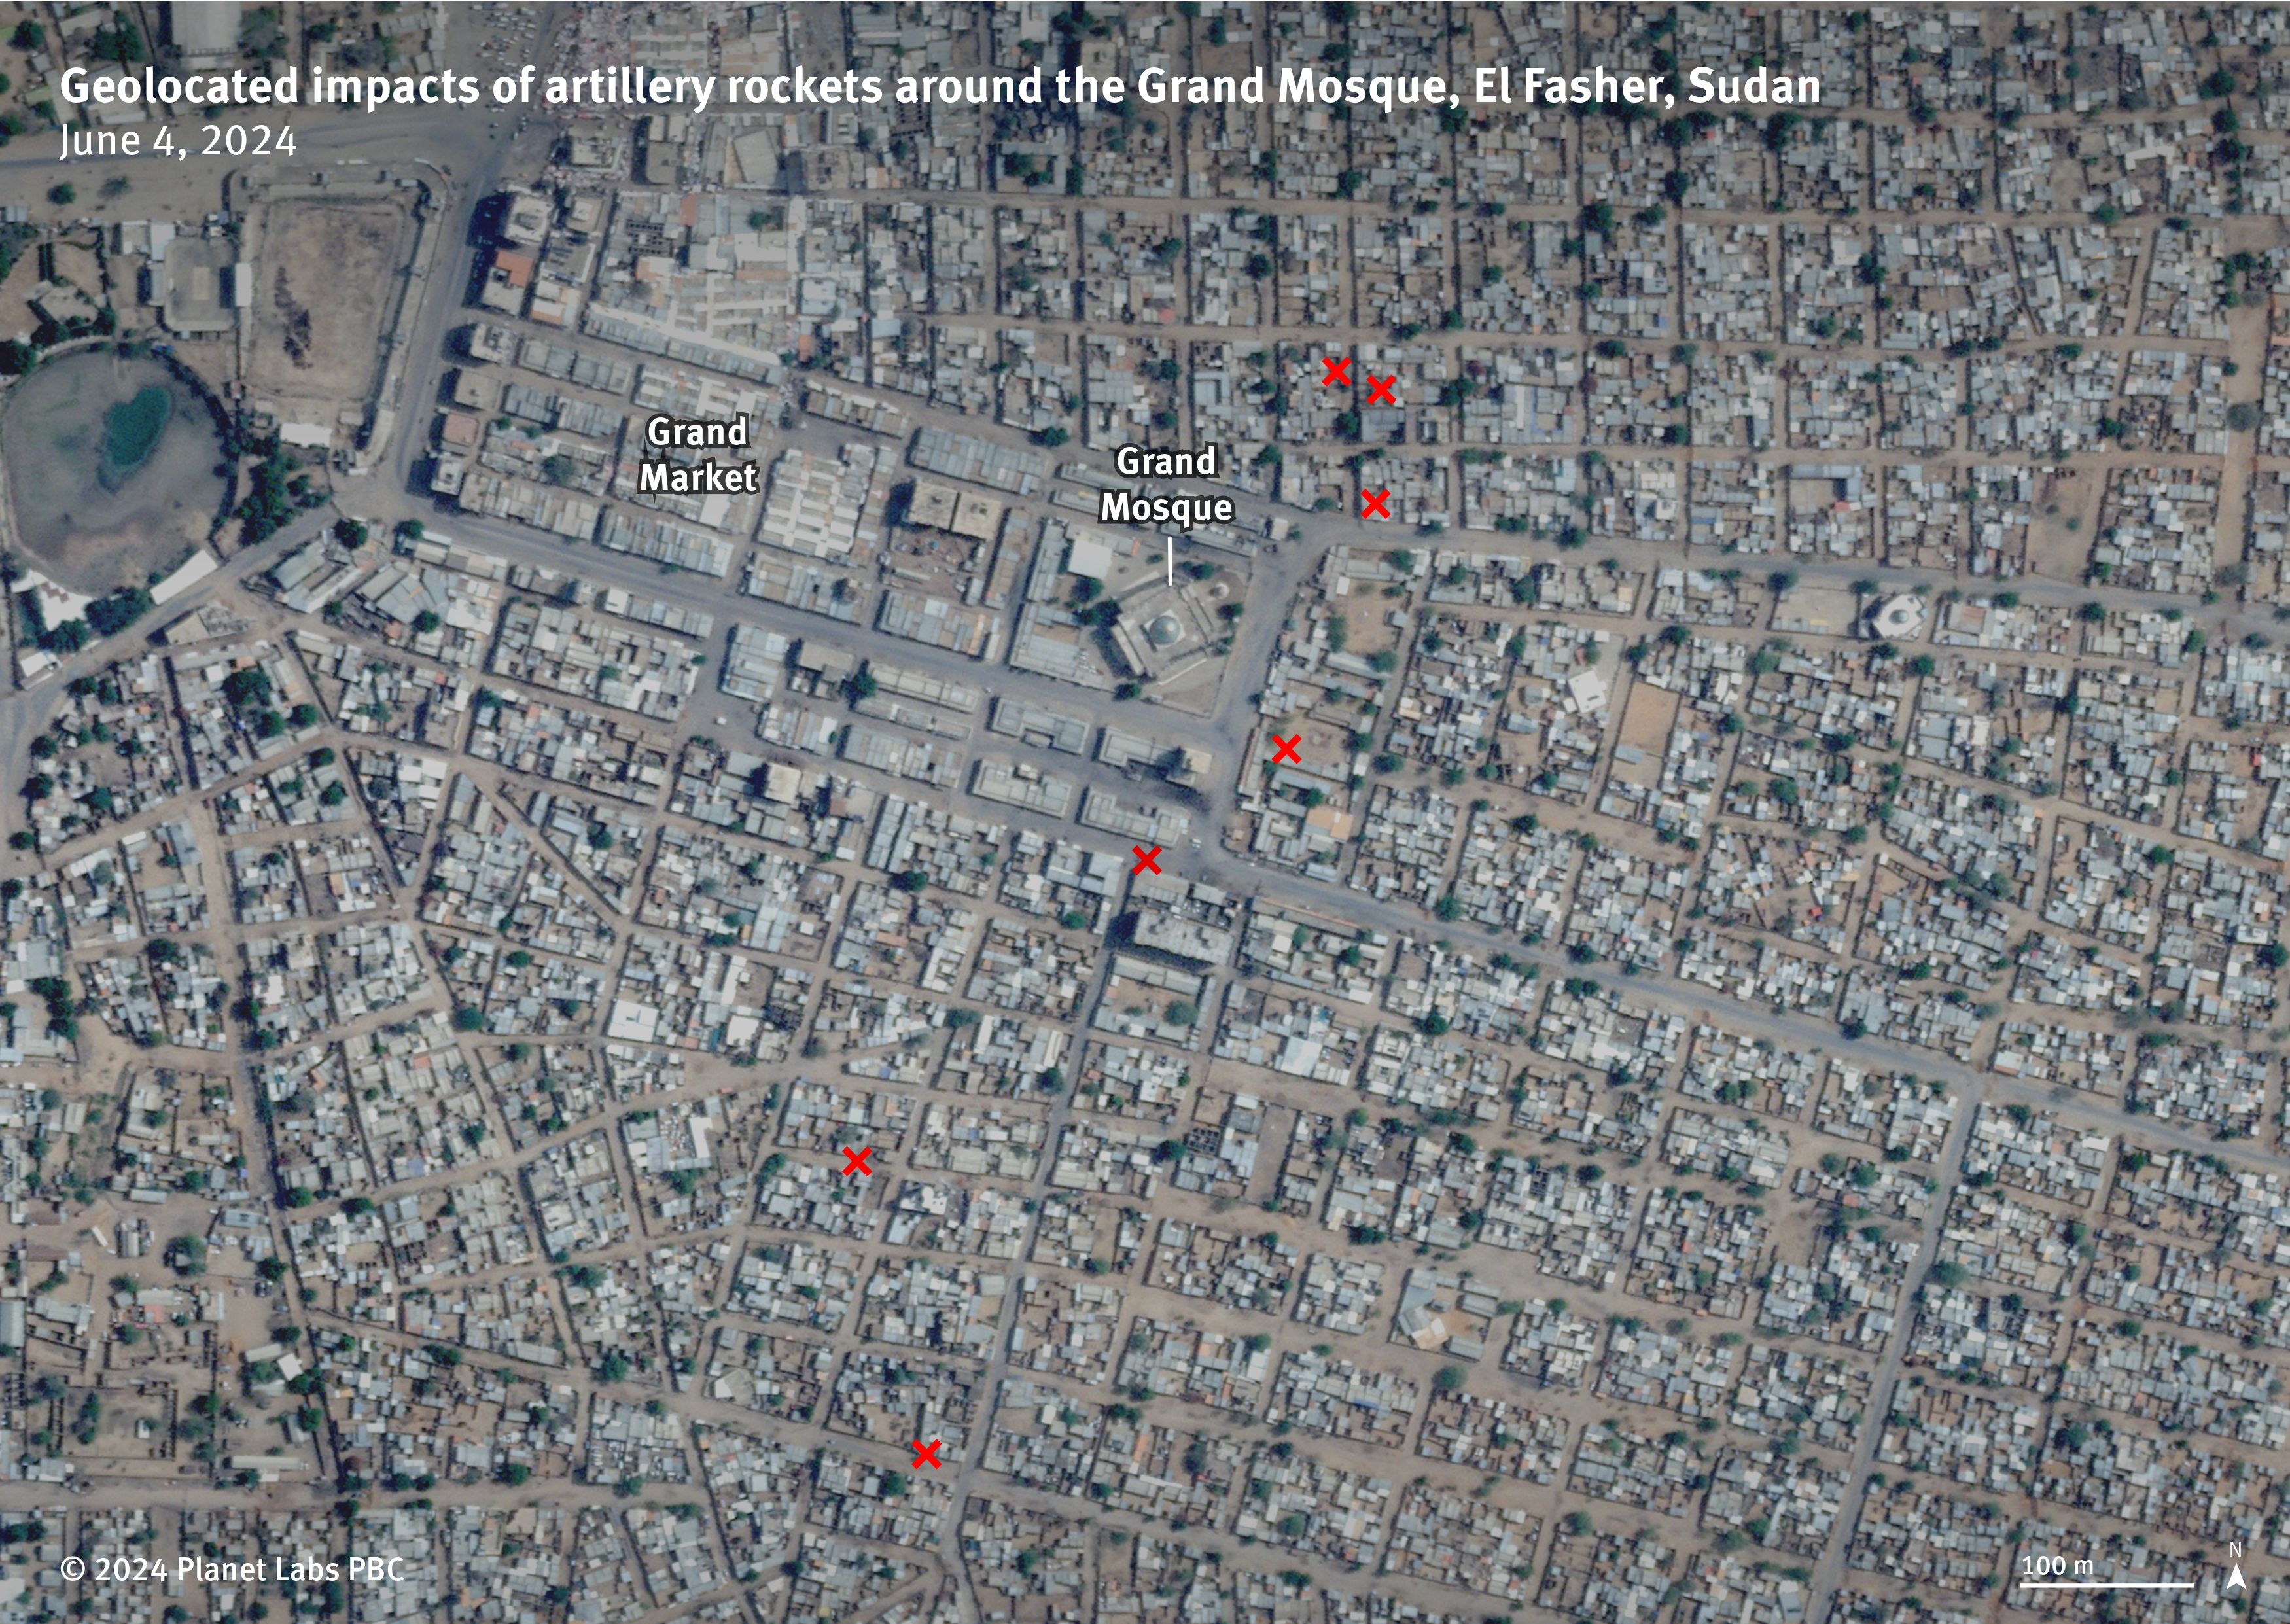 Le 3 juin 2024, des tirs de roquettes d'artillerie ont touché des zones résidentielles près de la Grande Mosquée et du Grand Marché dans le quartier central d'El-Fasher, au Darfour-Nord, au Soudan.